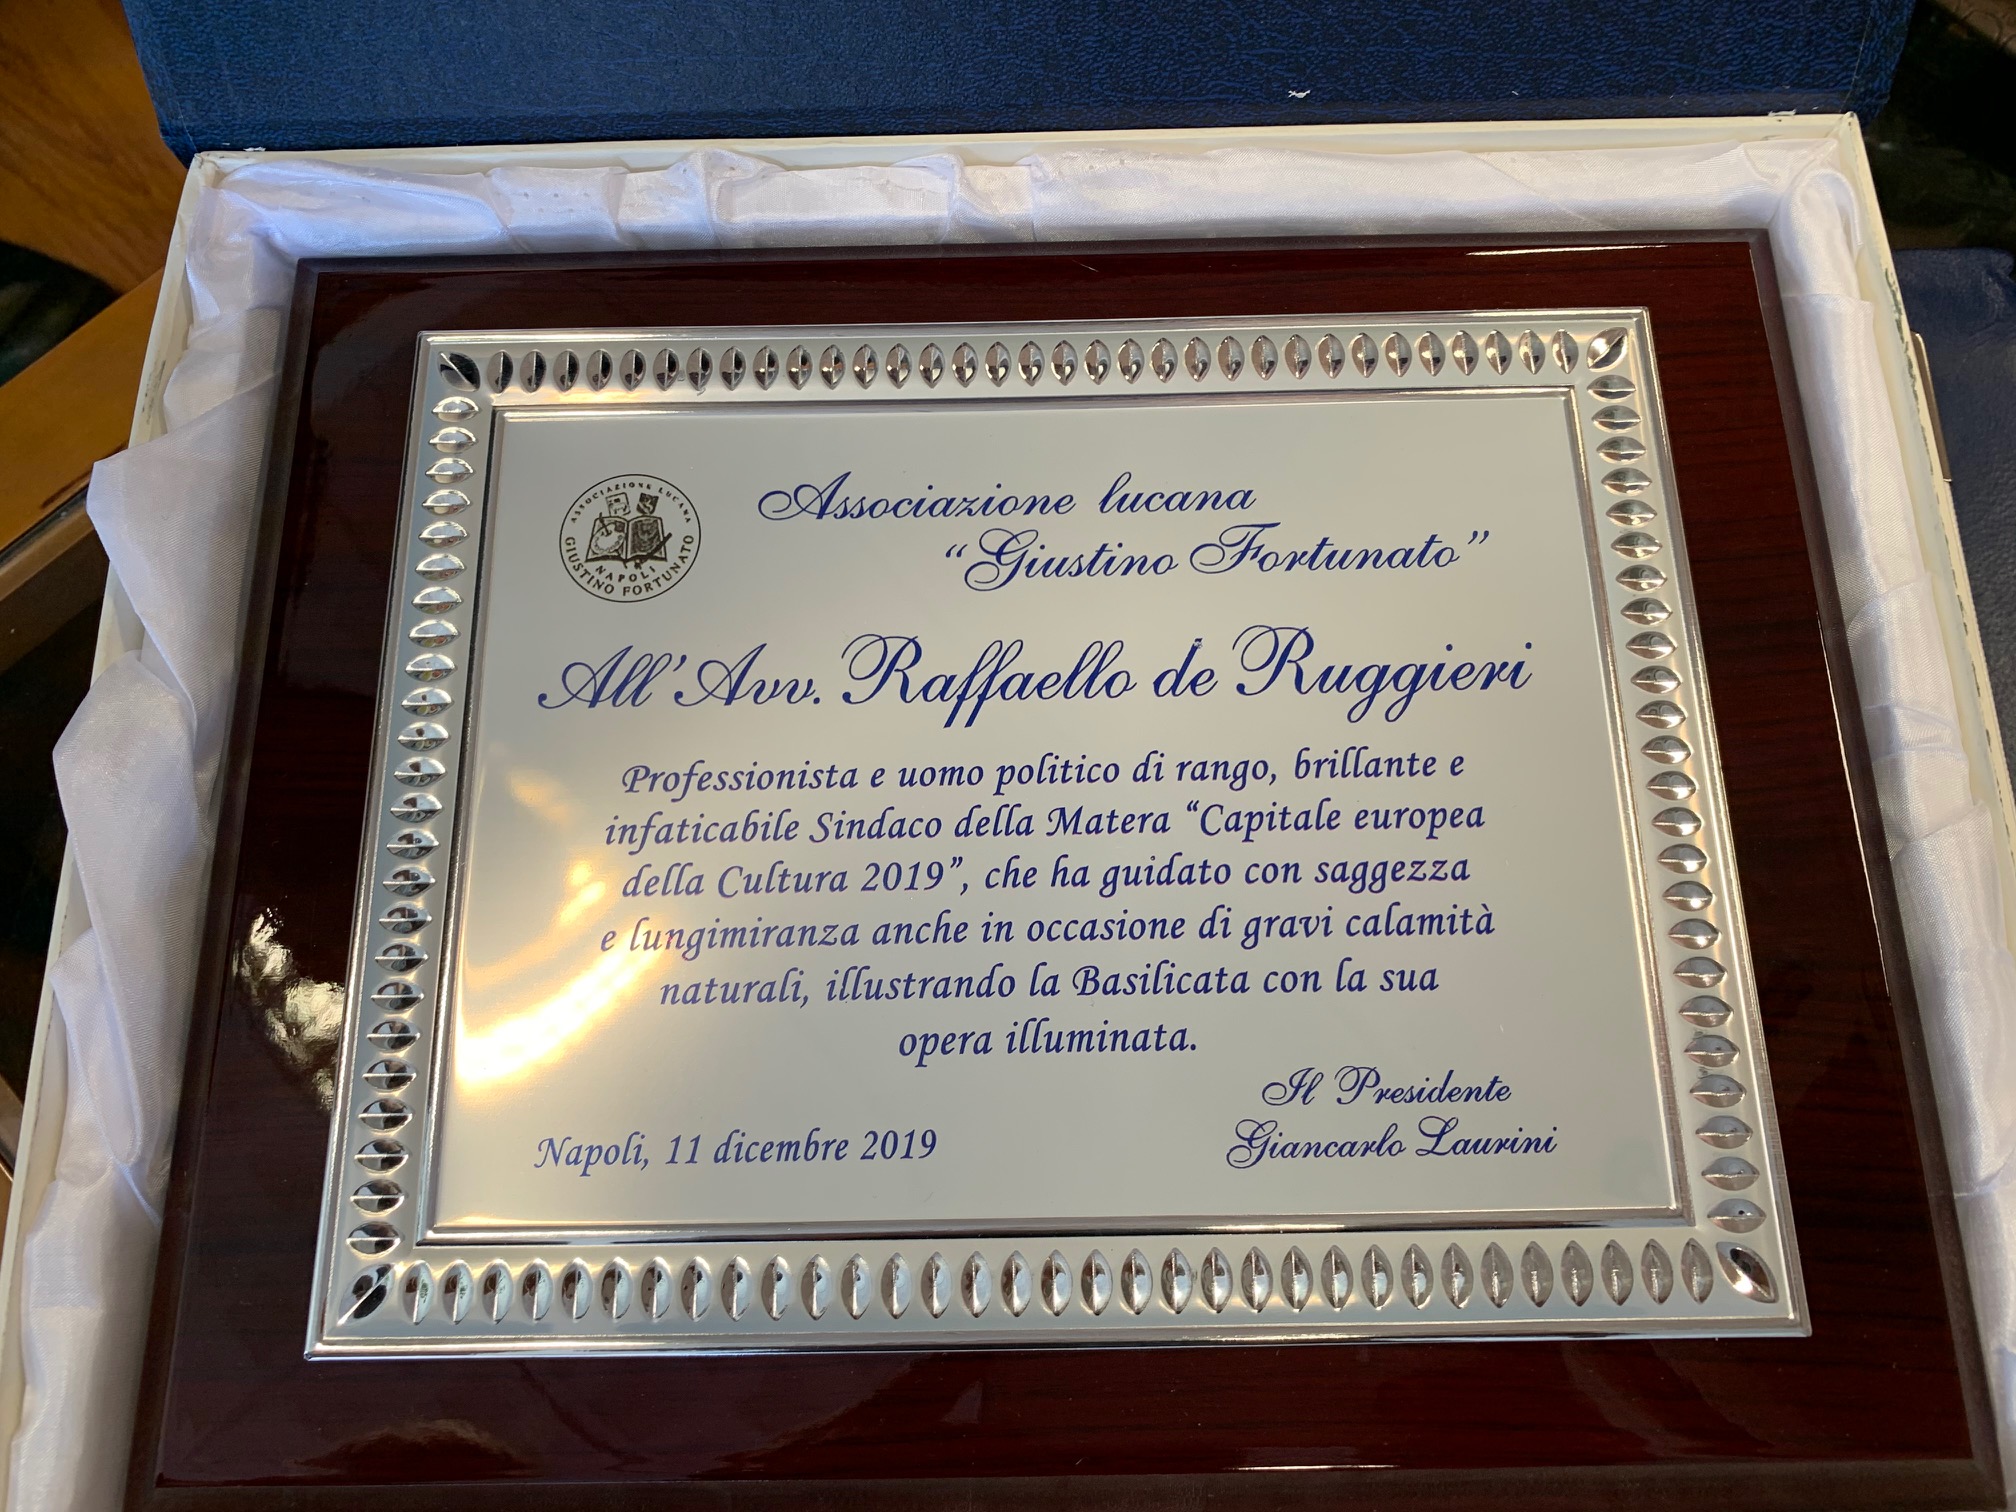 Il Sindaco de Ruggieri premiato dall’Associazione lucana “G. Fortunato”